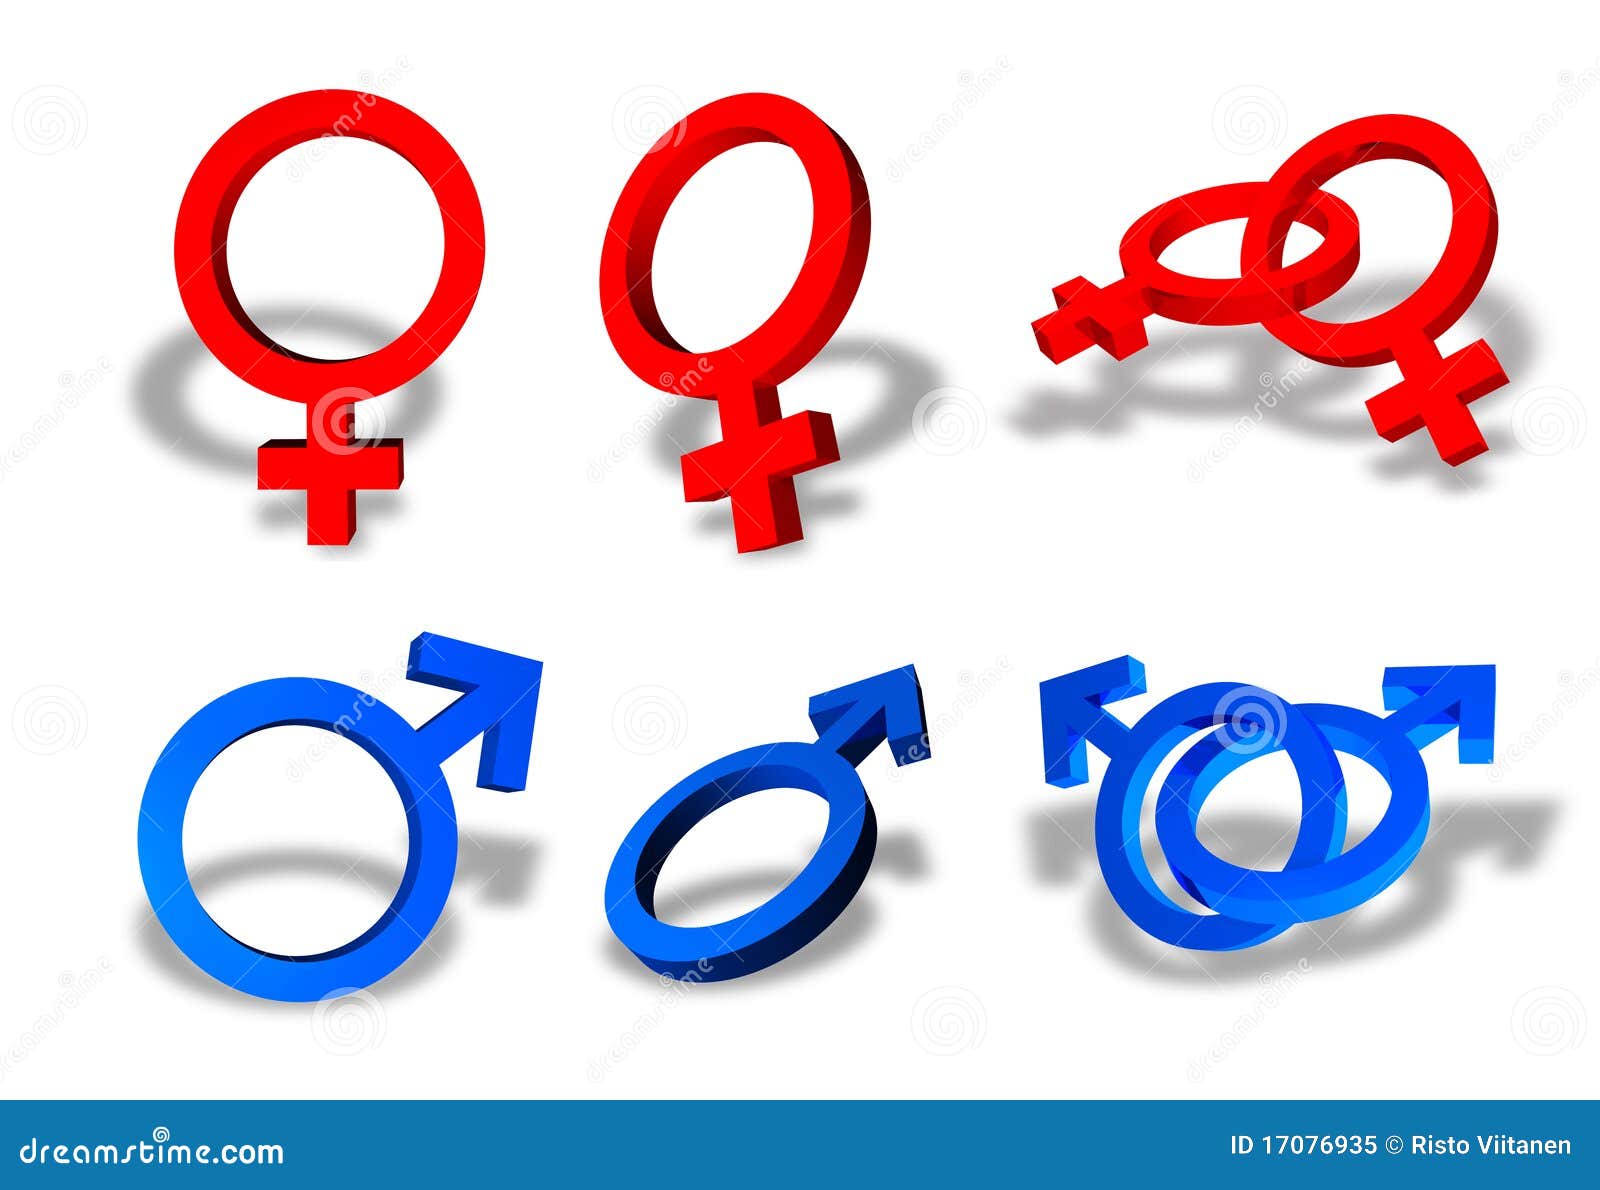 Kvinnligmanligsexsymboler. Sexsymboler för samlingskvinnligmanlig